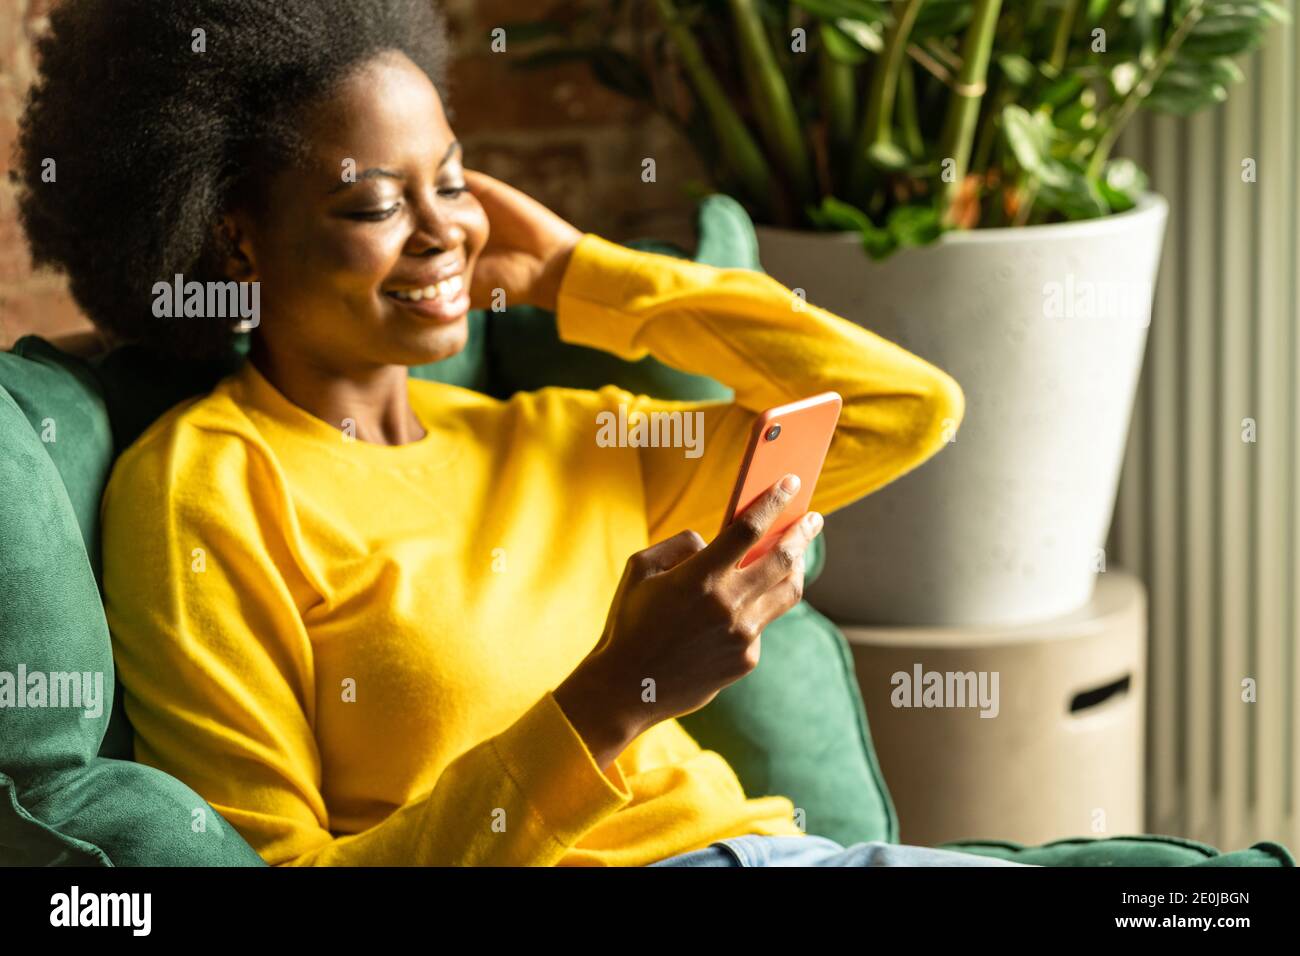 Gros plan de la jeune femme millénaire afro-américaine porte un chandail jaune assis dans une chaise verte, se reposer, utiliser un smartphone, taper un message Banque D'Images